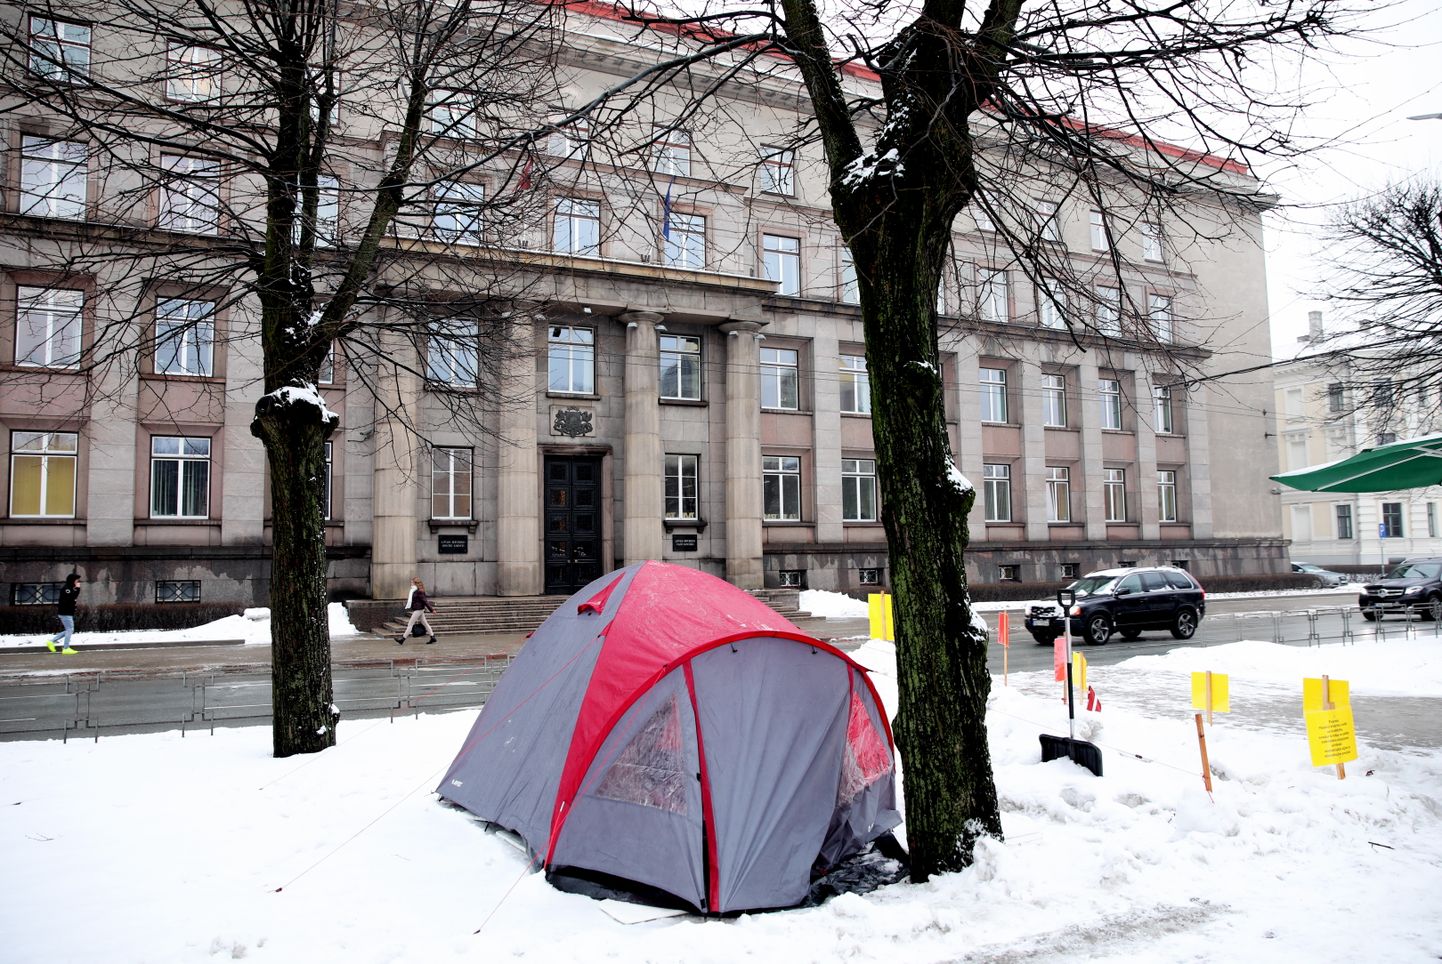 Latvijas Republikas pilsonis Ainārs Kadišs iepretim Ministru Kabineta ēkai uzsācis nepārtrauktu badastreiku un novietojis telti.